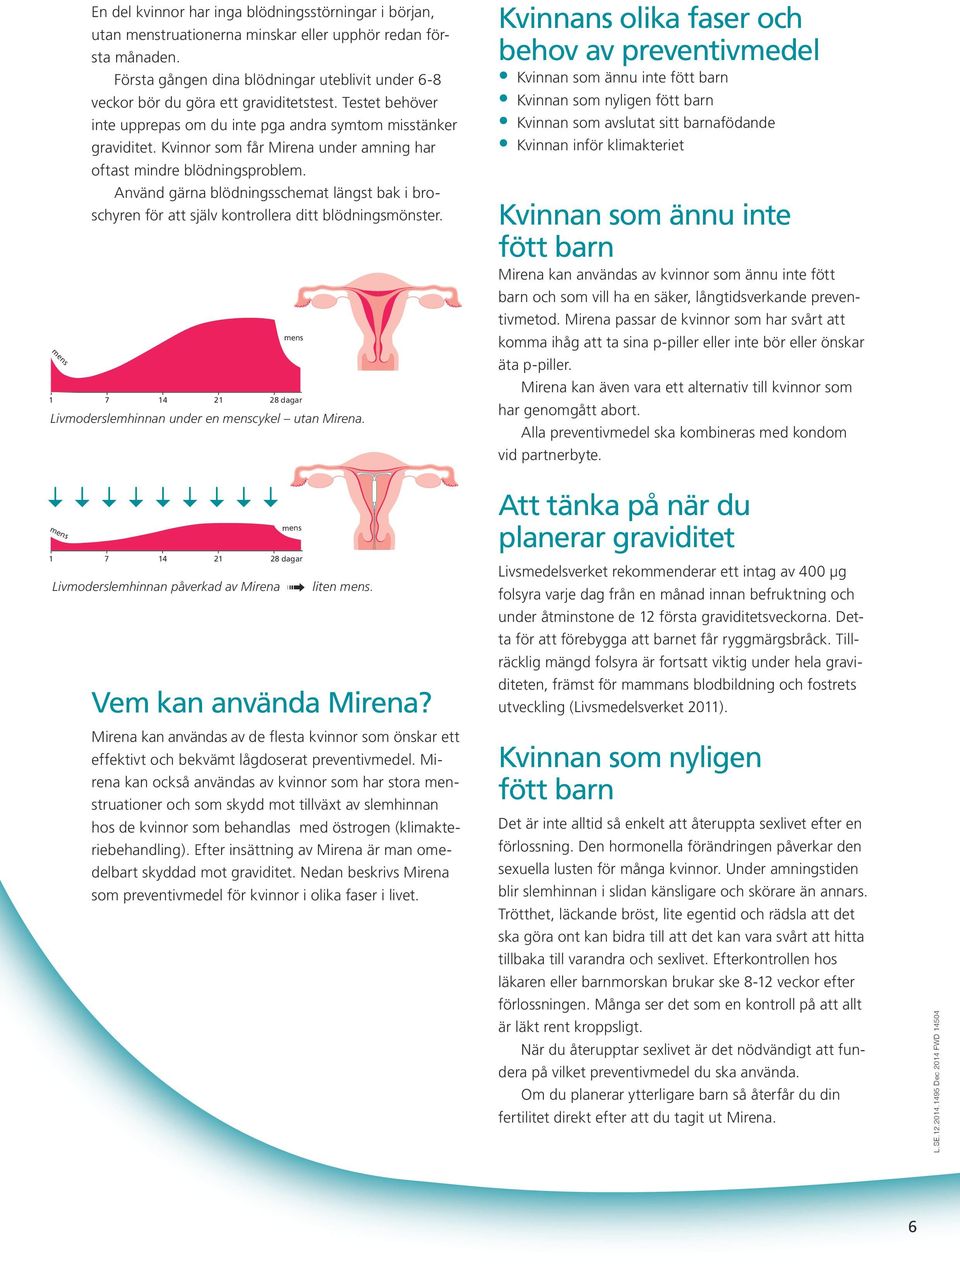 Kvinnor som får Mirena under amning har oftast mindre blödningsproblem. Använd gärna blödningsschemat längst bak i broschyren för att själv kontrollera ditt blödningsmönster.